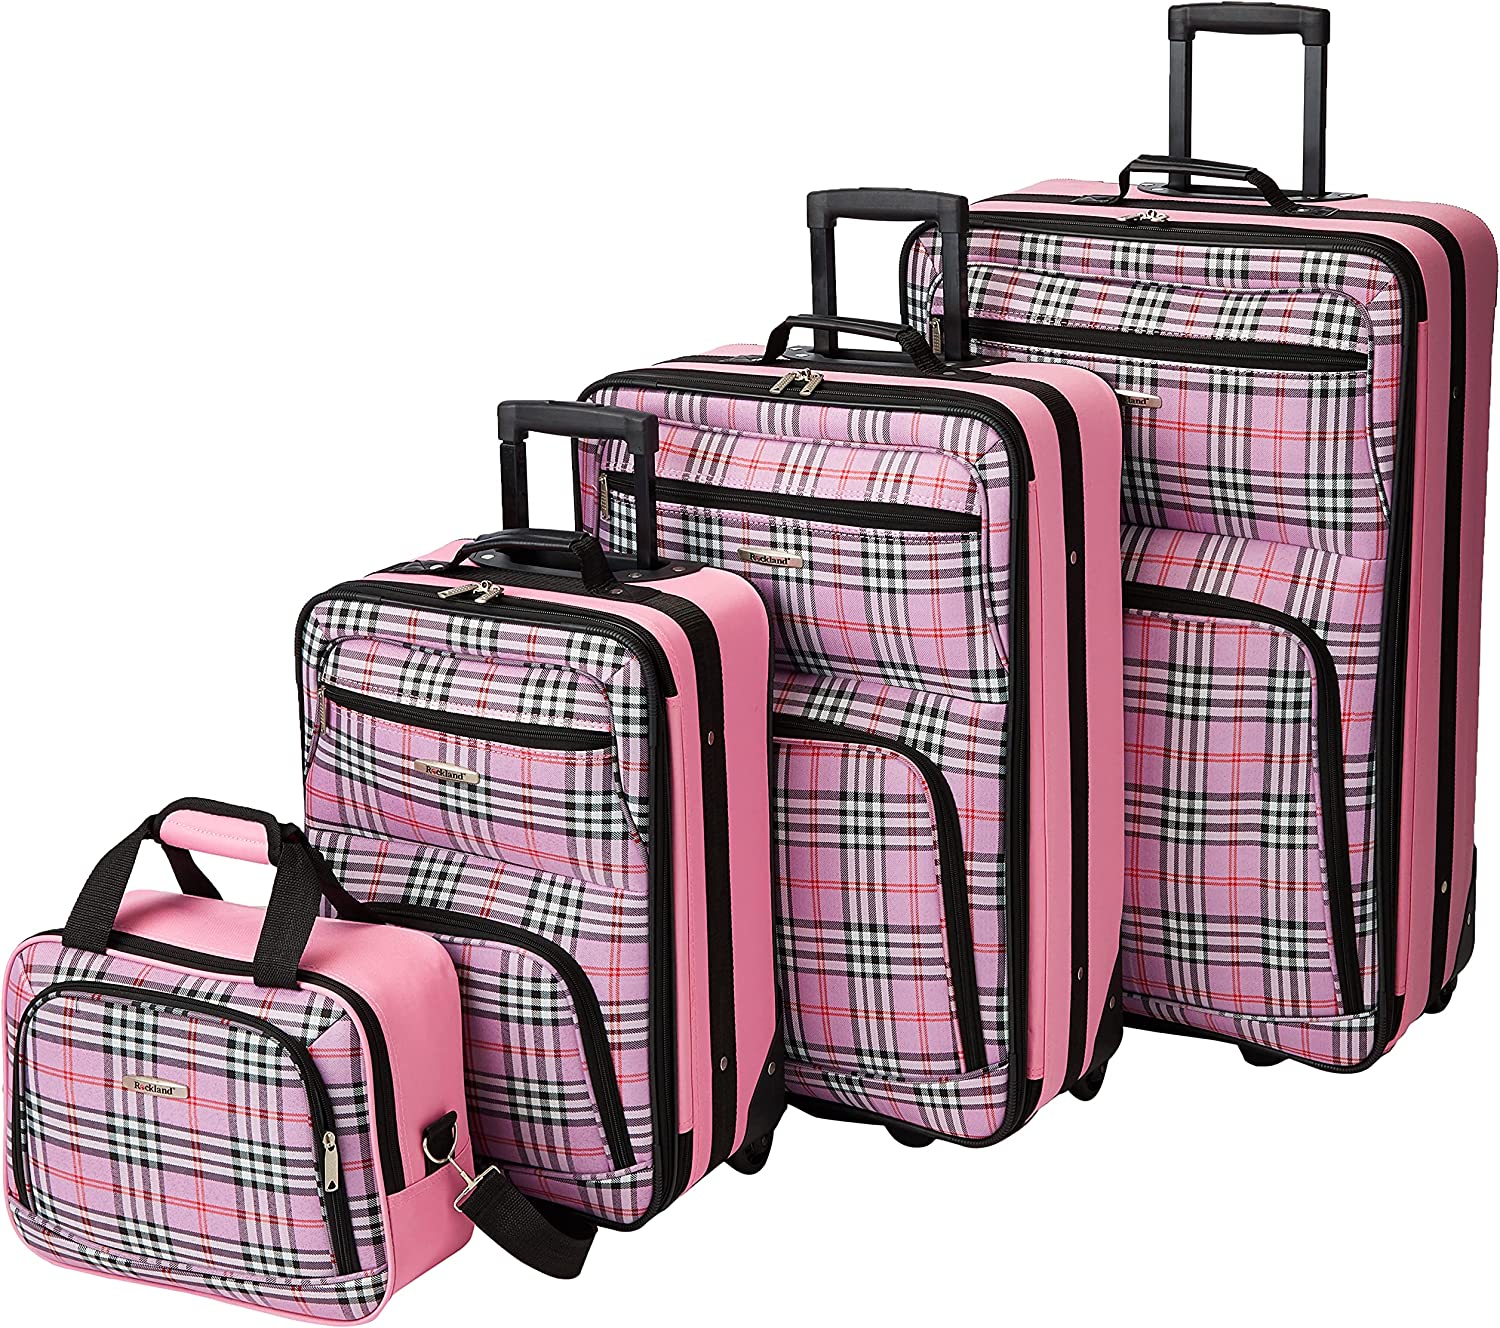 Rockland Fashion Softside Upright Luggage Set, Pink Cross, 4-Piece (14/19/24/28)